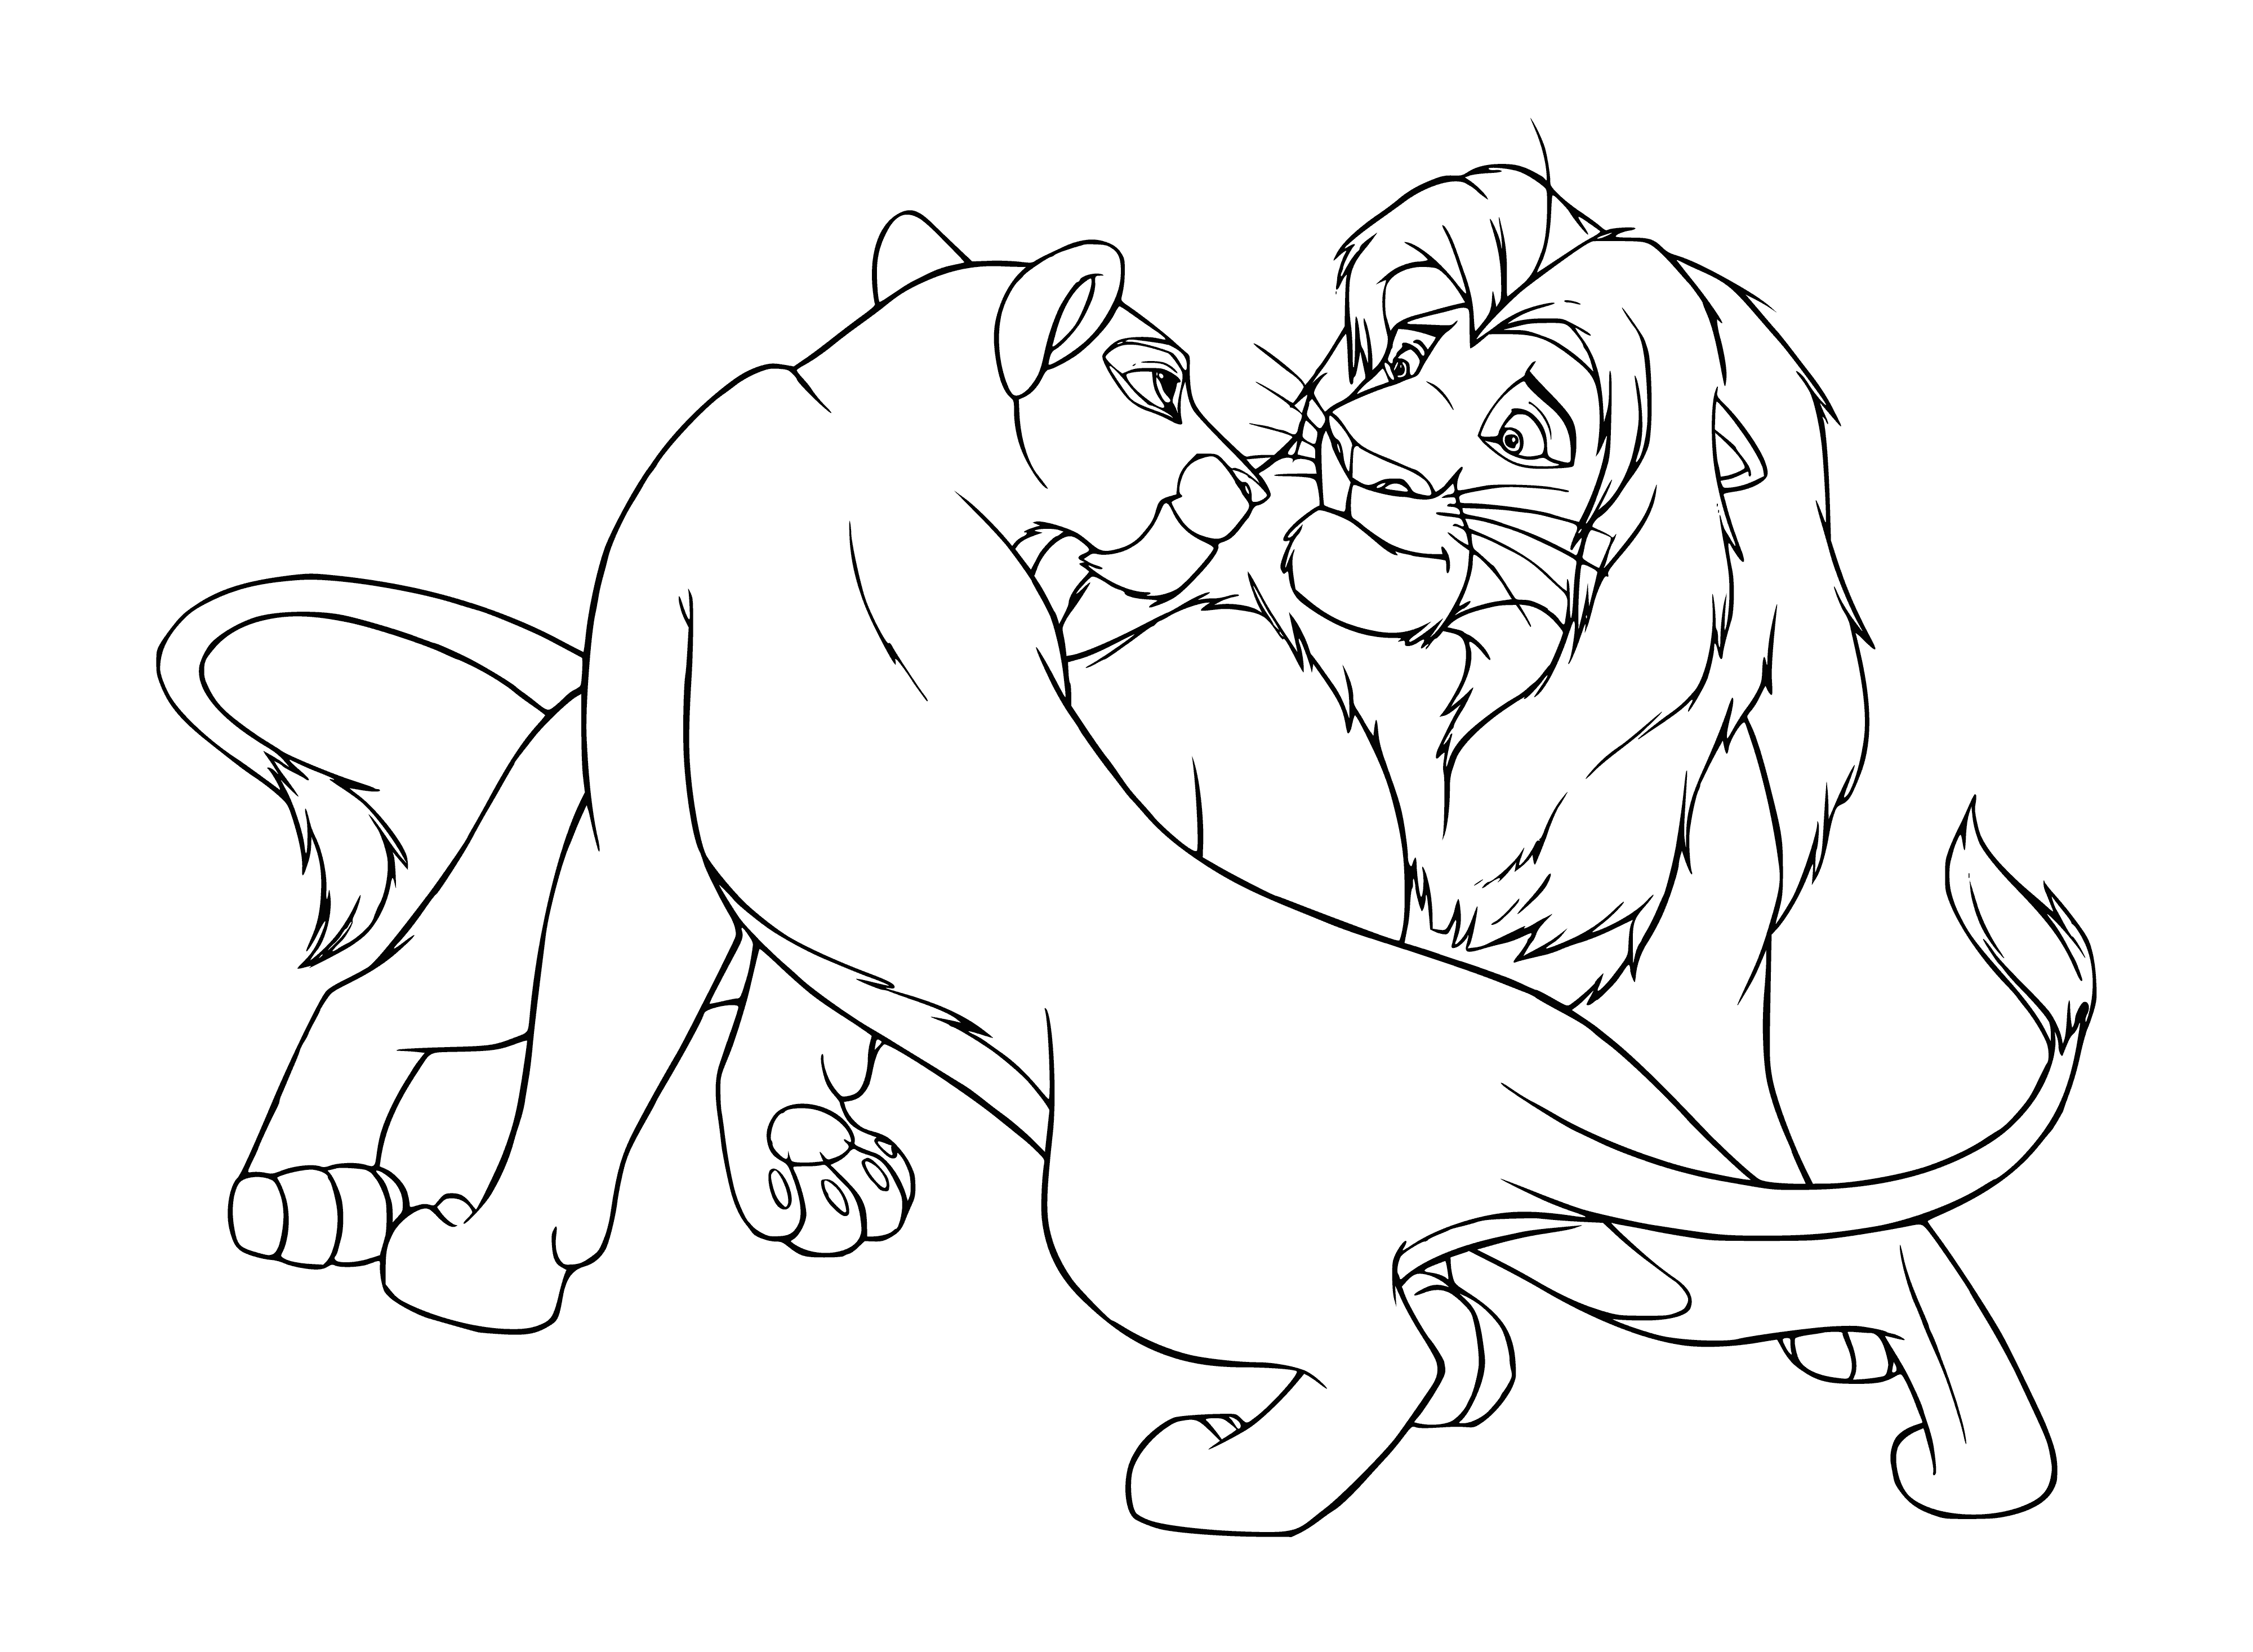 Adults Simba and Nala coloring page